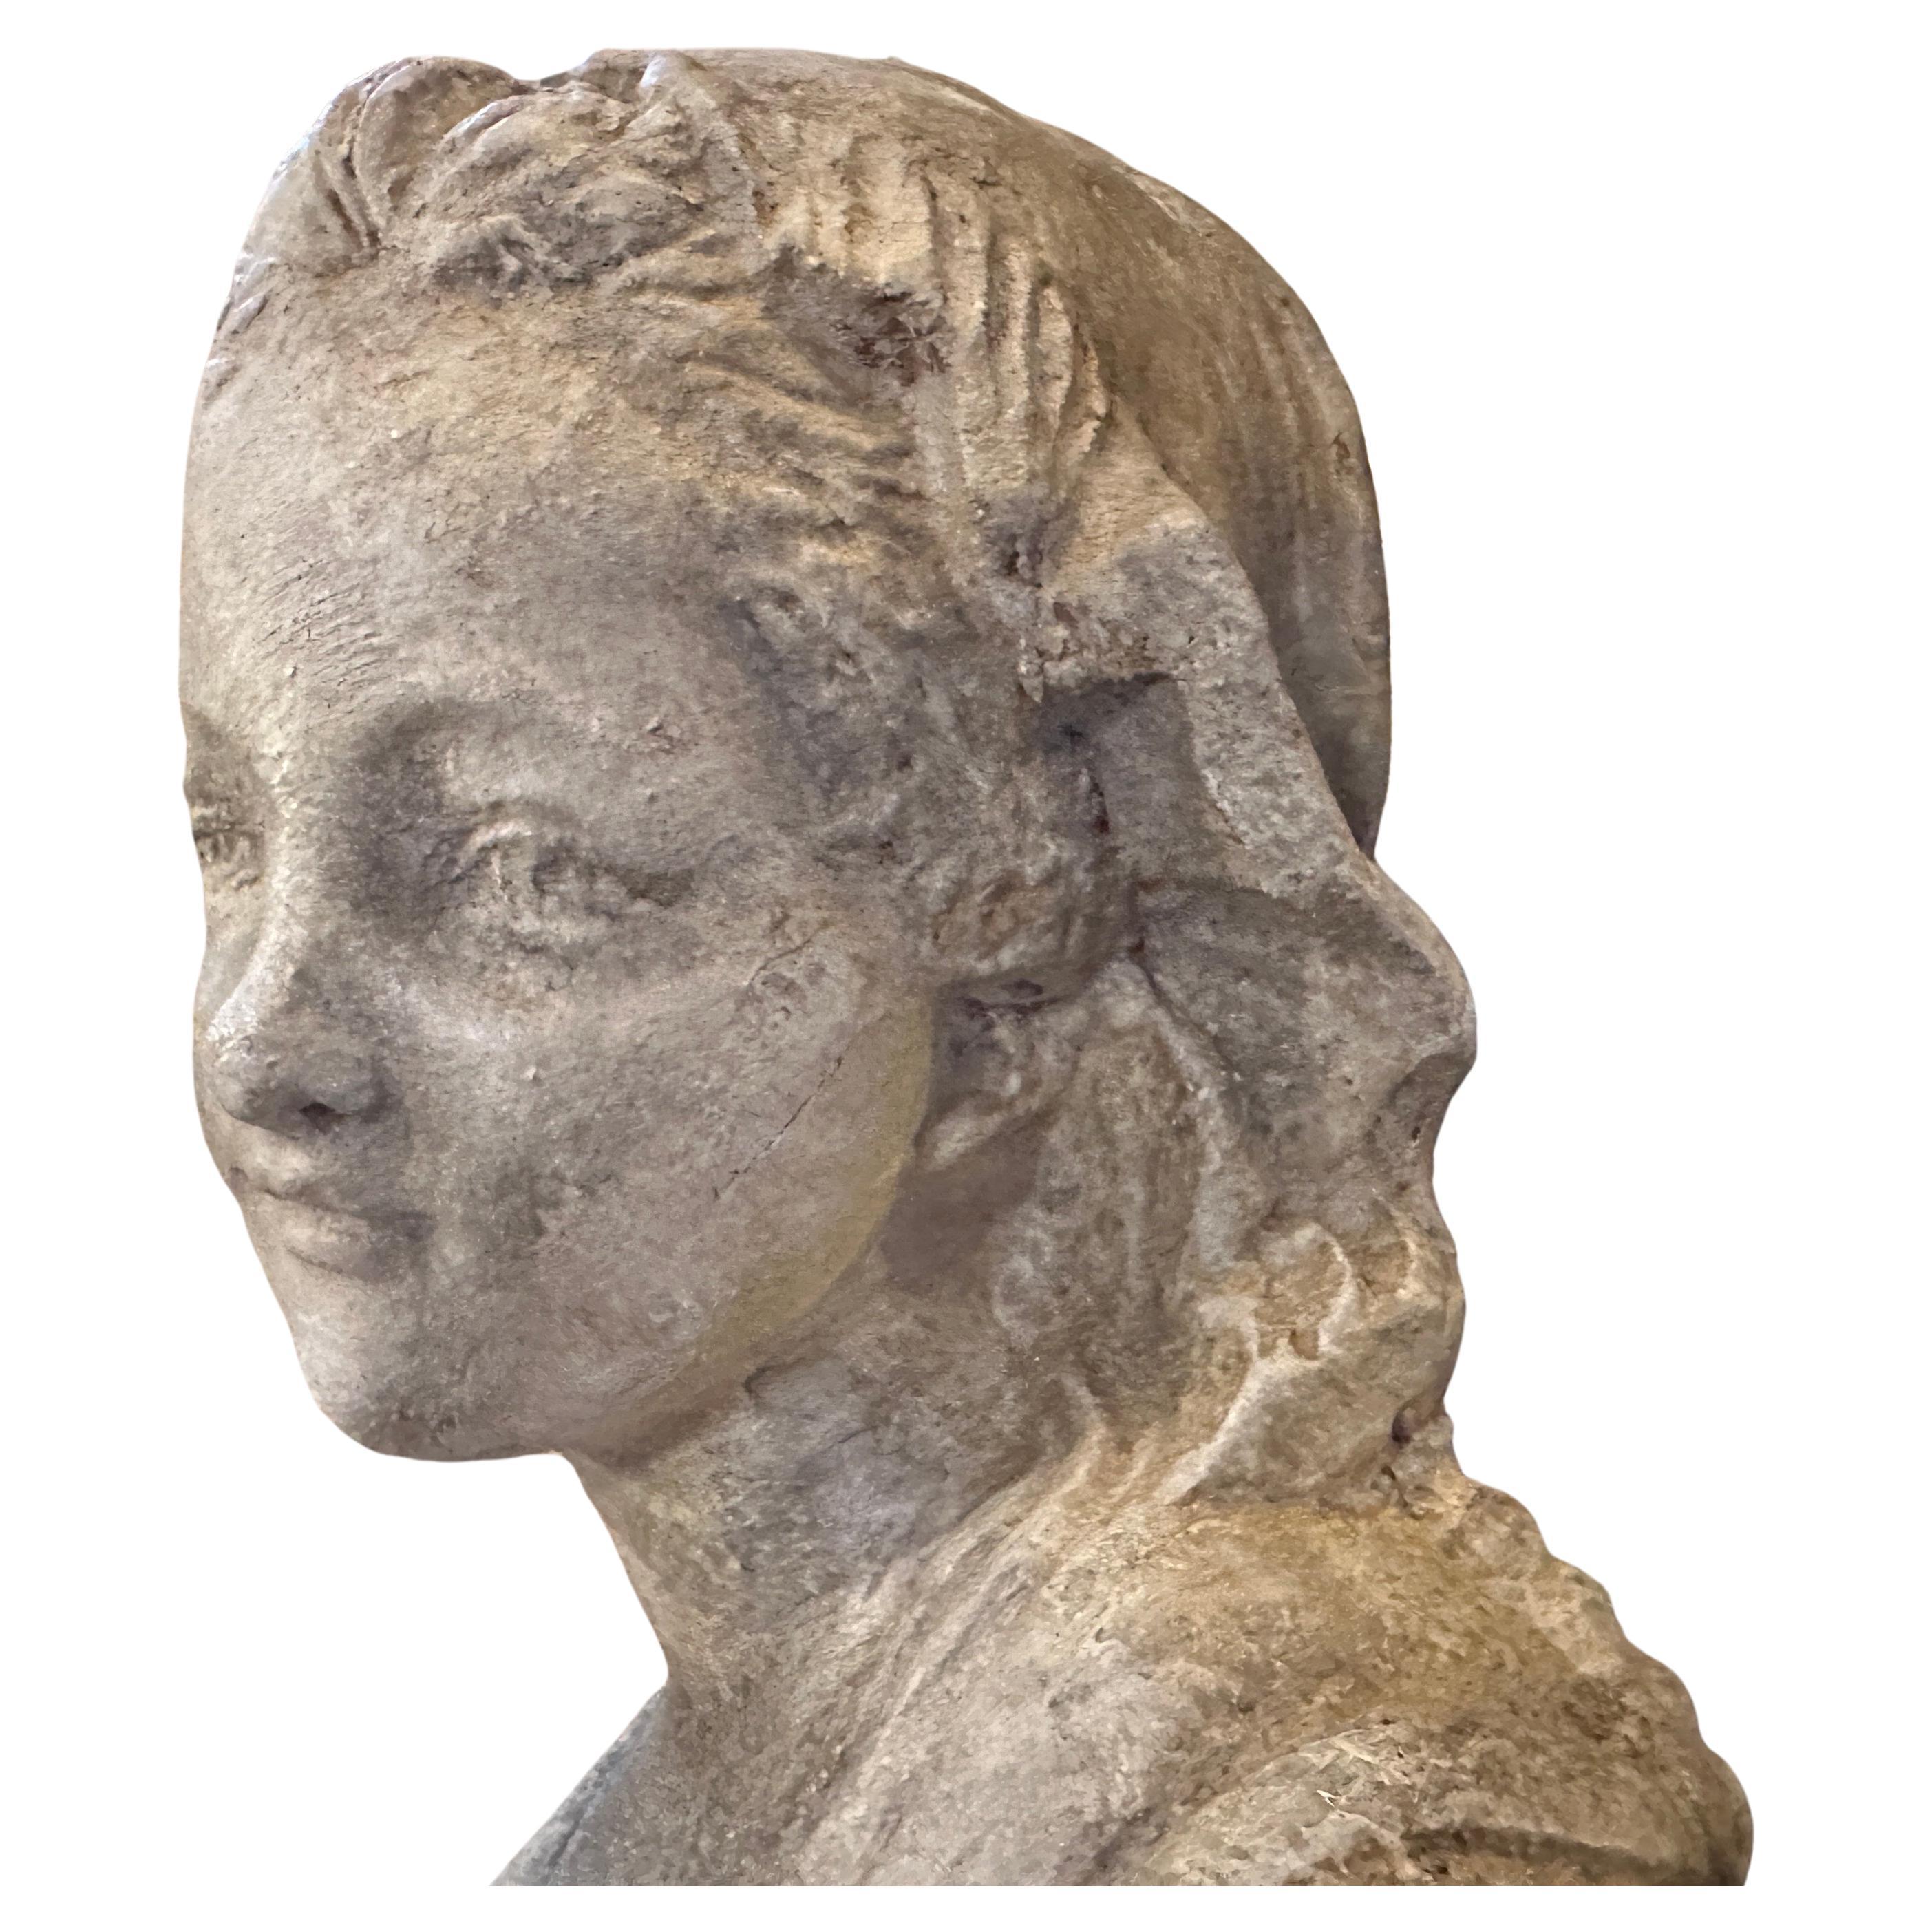 Sculpture en terre cuite fabriquée à la main en Sicile dans la première moitié du XXe siècle, elle présente une patine d'origine avec des signes d'utilisation et d'âge. Une sculpture en terre cuite est une œuvre d'art captivante. Le fait qu'elle